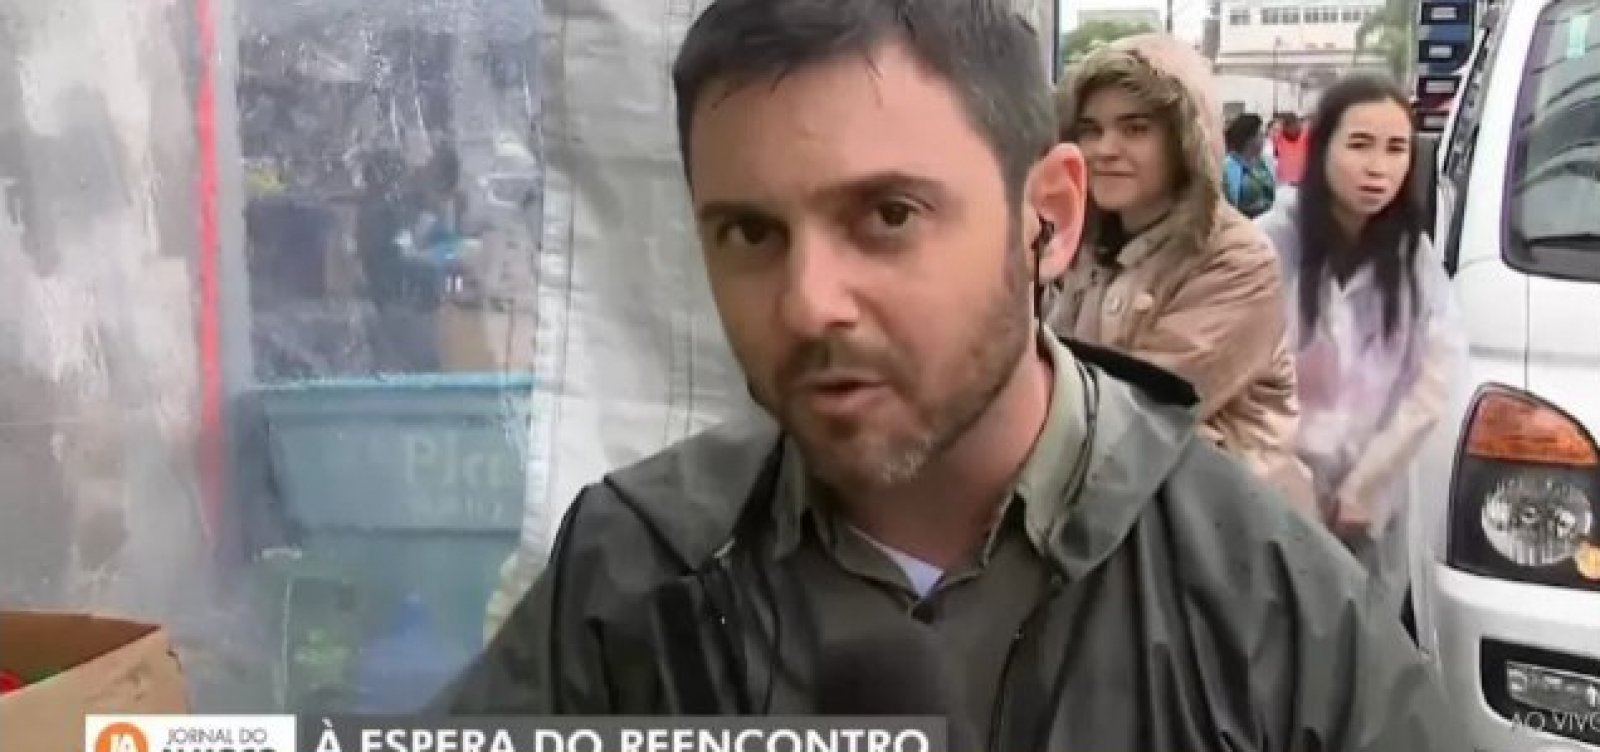 Reportagem ao vivo de afiliada da Globo no RS é interrompida aos gritos de "Globo lixo"